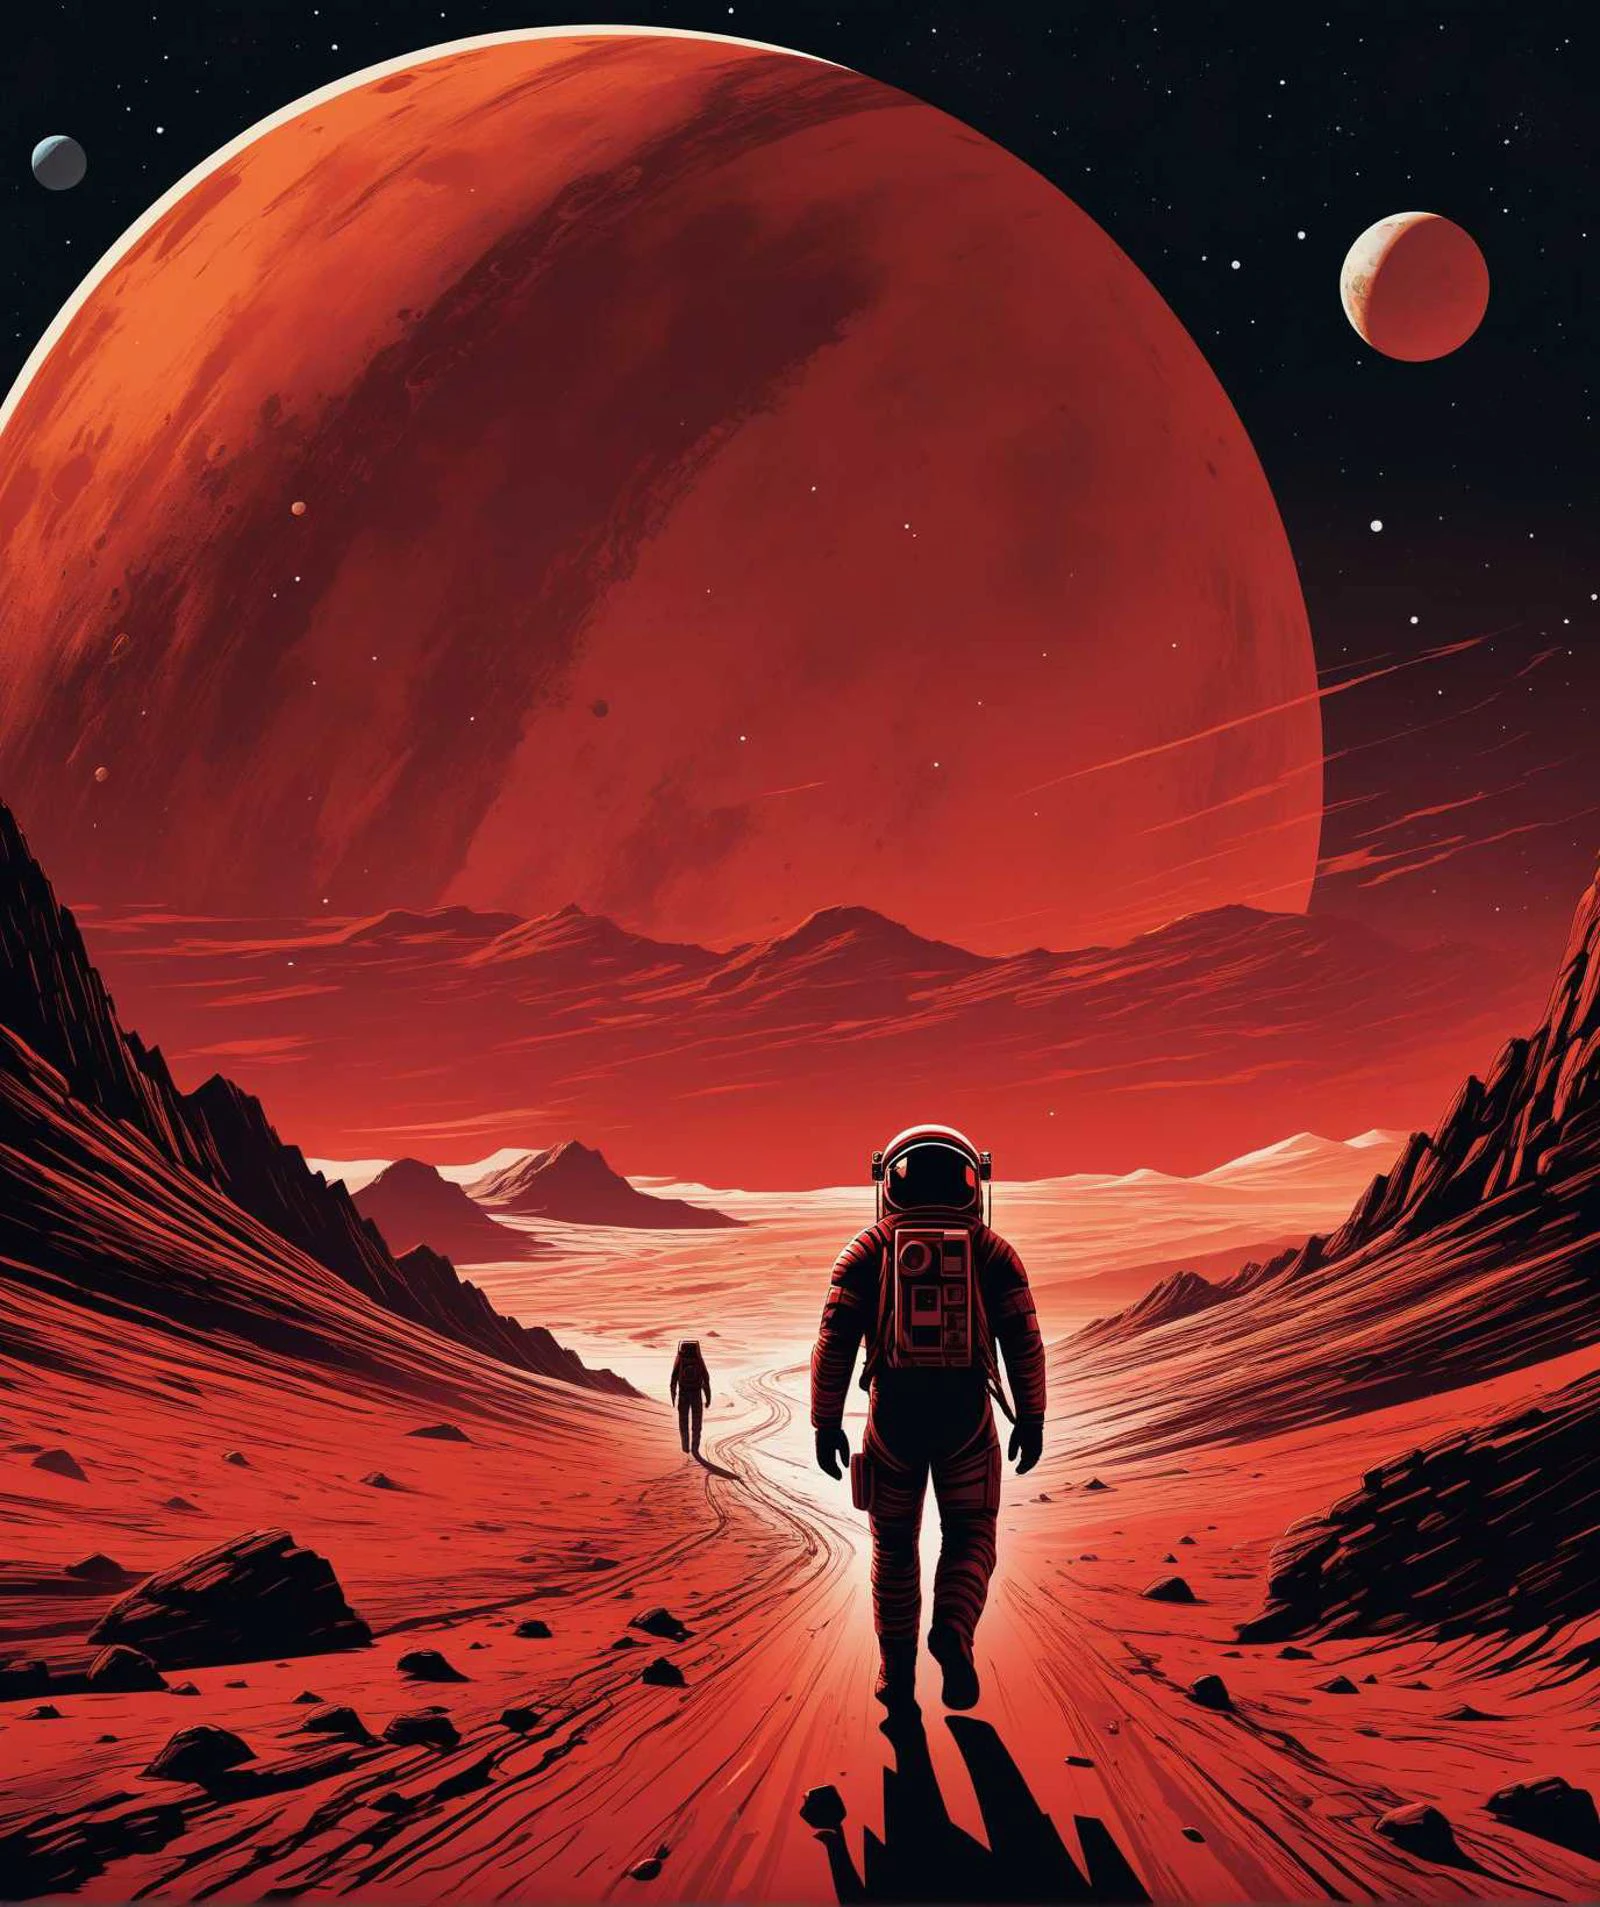 astronauta caminando sobre un planeta rojo con un planeta rojo al fondo, arte del cartel inspirado en Dan Mumford, presentado en Behance, arte espacial, en el estilo de la obra de dan mumford, en el estilo artístico de dan mumford, ilustración de ciencia ficción, (arte de darwyn cooke)